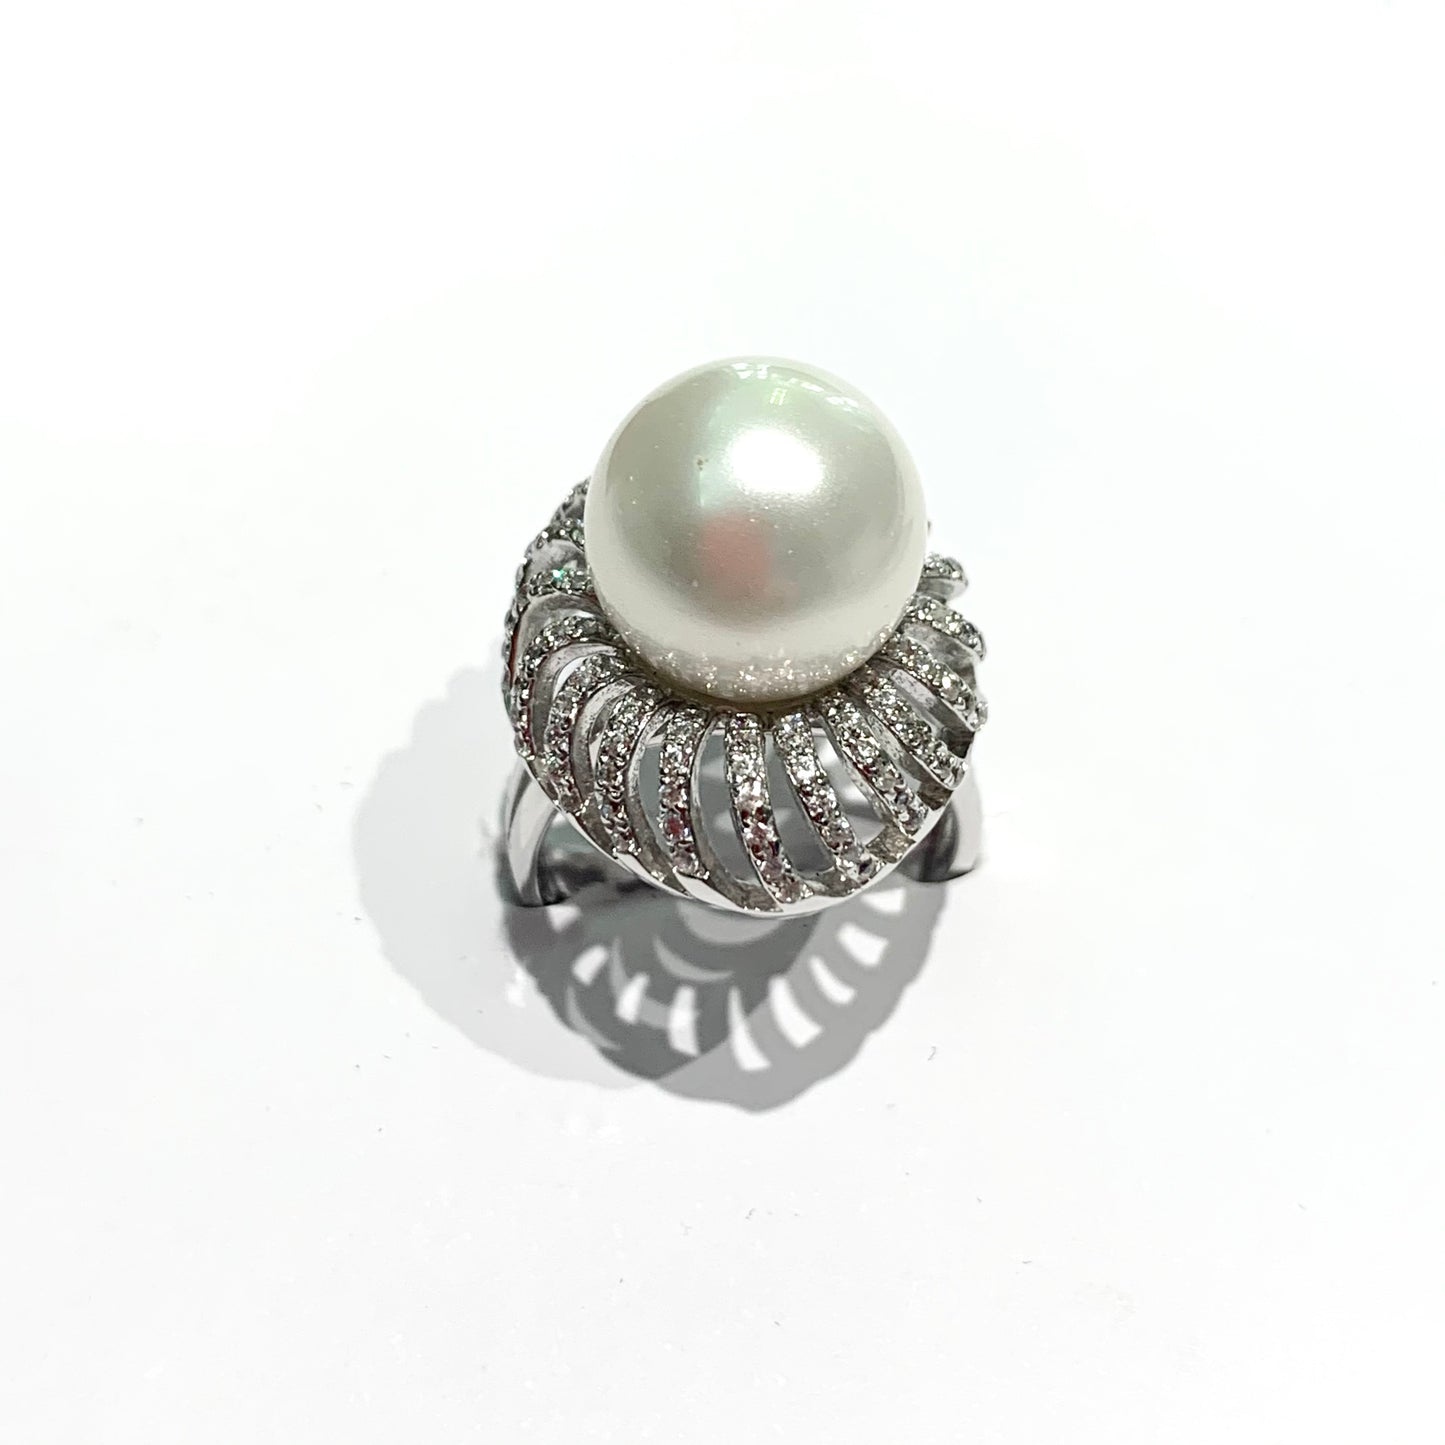 Anello in argento con perla coltivata centrale circondata da zirconi.  Dimensioni perla 1 cm.  Dimensione totale 1,7x2,3 cm.  Misura regolabile da 13 a 17.